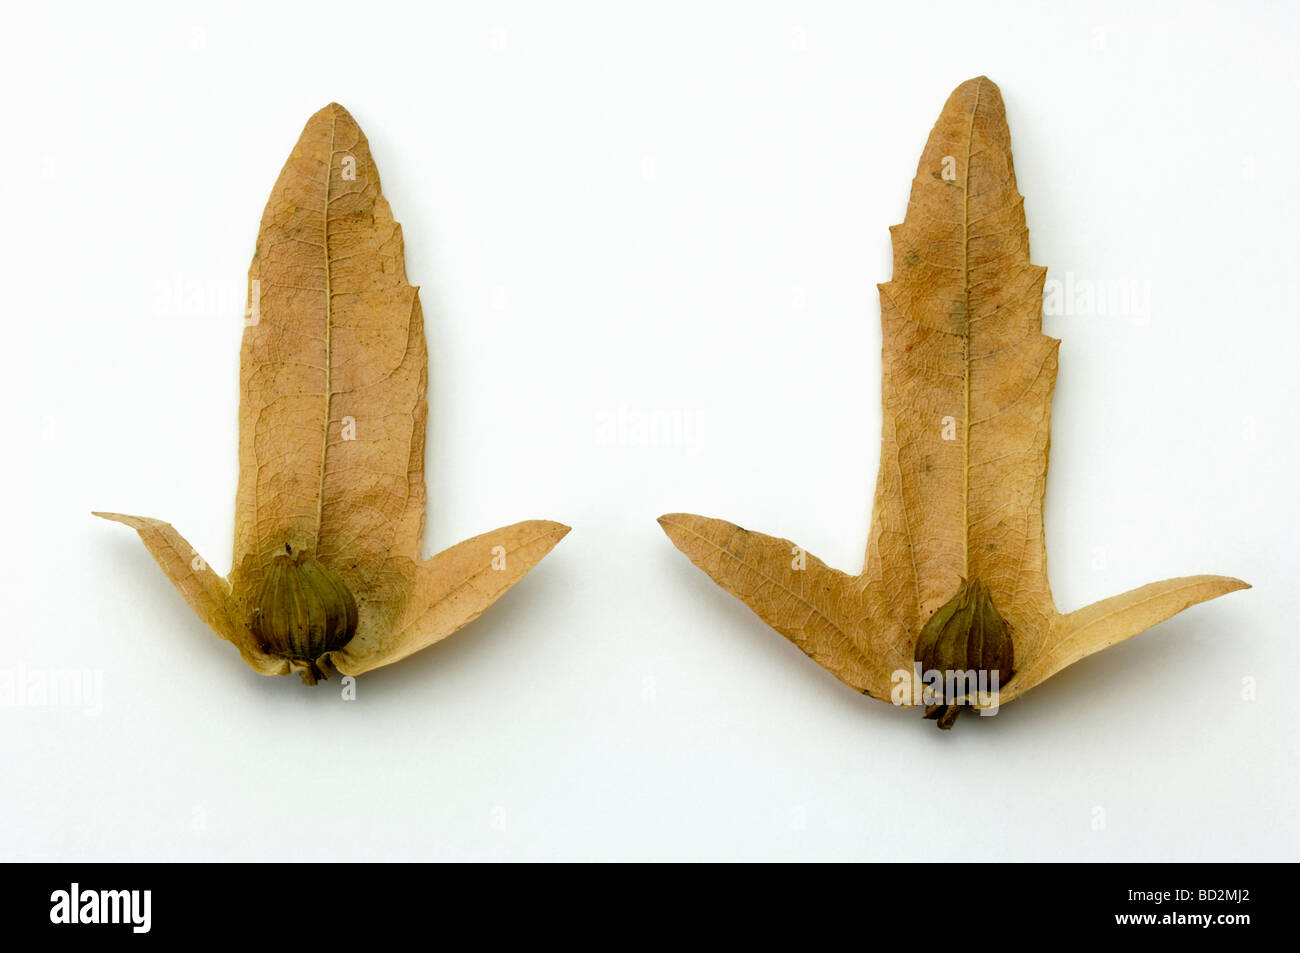 Gemeinsamen Hainbuche, Europäische Hainbuche (Carpinus Betulus), Samen, Studio Bild Stockfoto